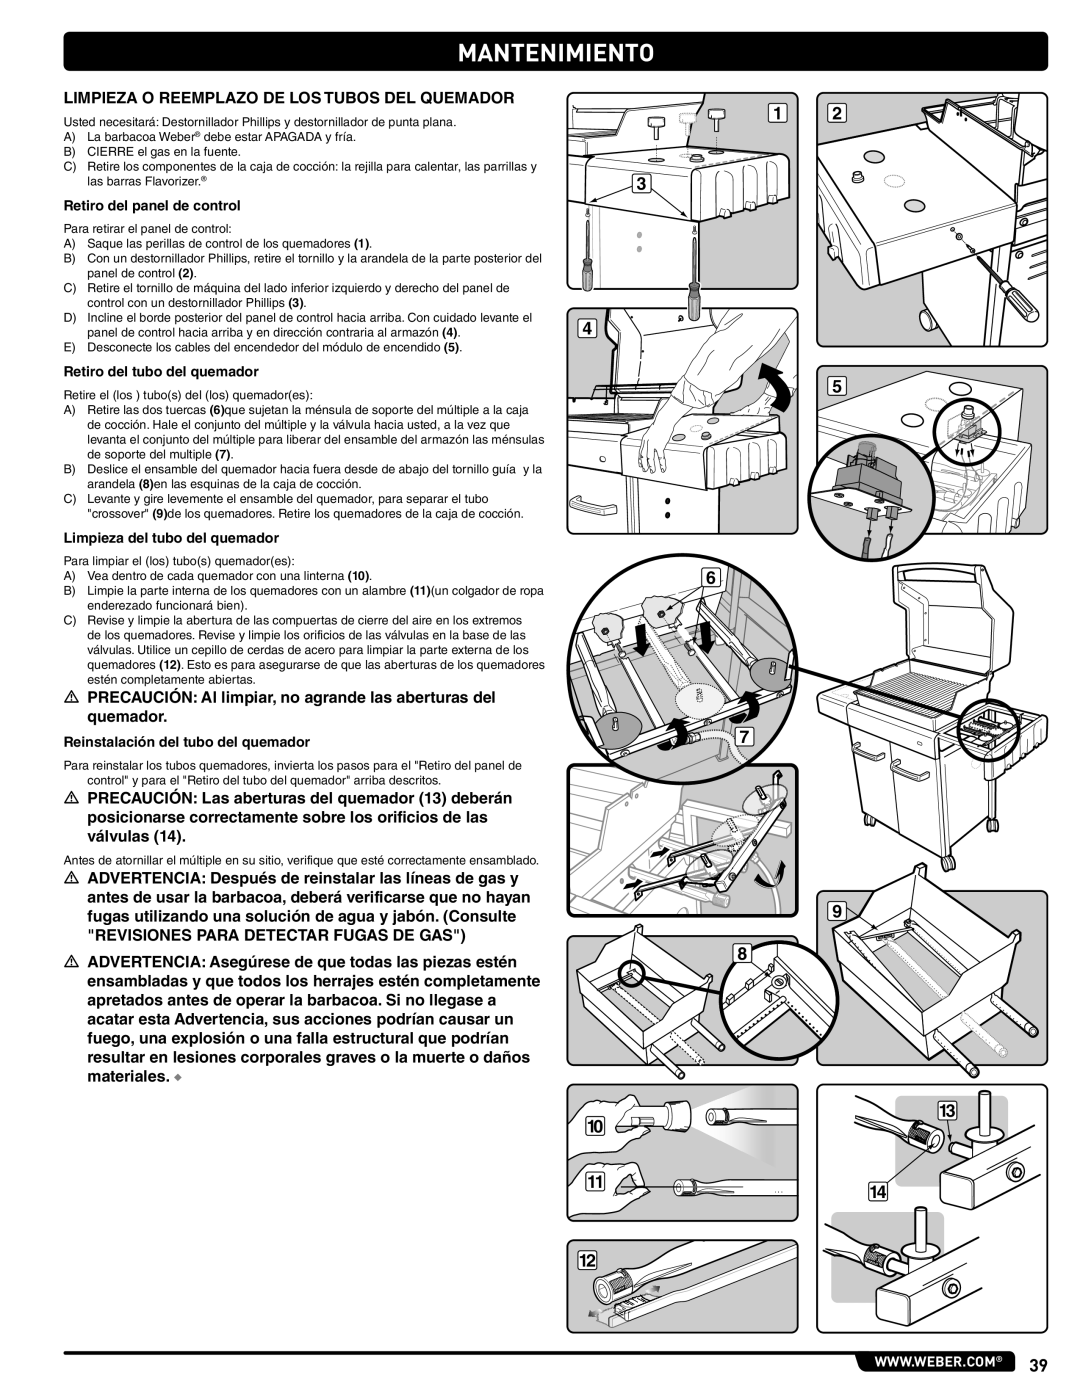 Weber 89963 manual Limpieza O Reemplazo DE LOS Tubos DEL Quemador, Revisiones Para Detectar Fugas DE GAS 